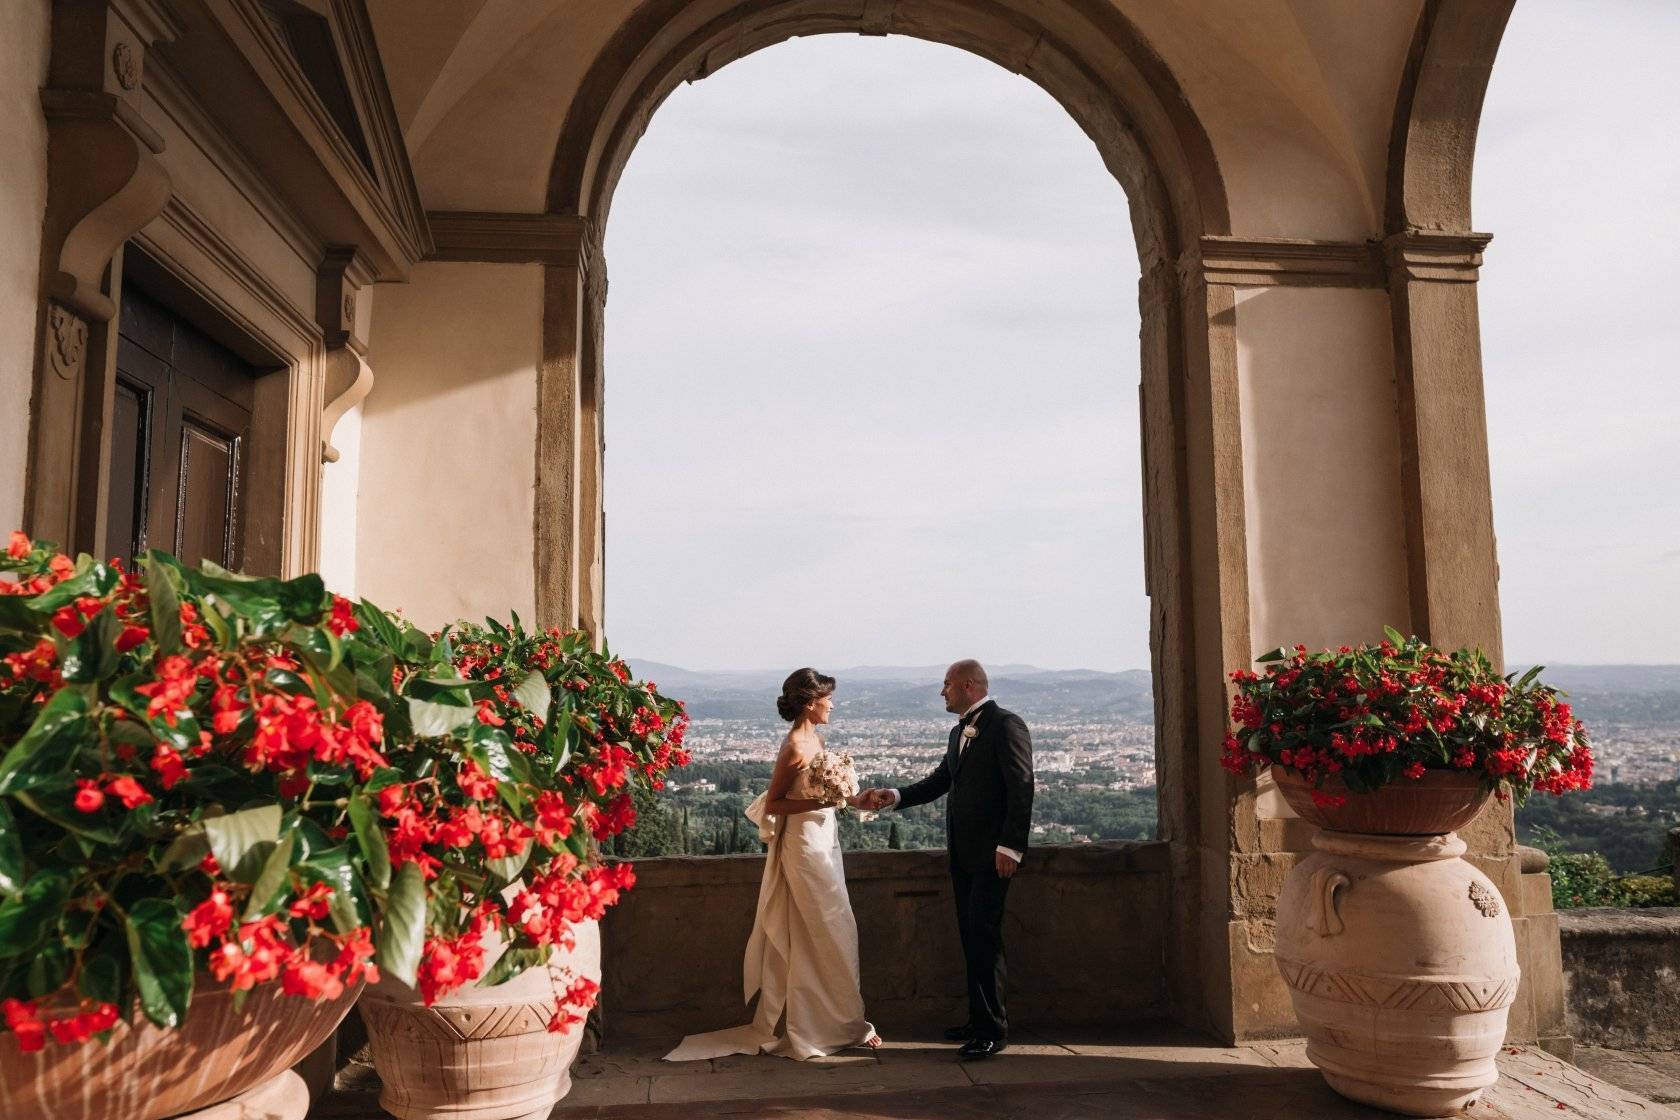 Клятва в любви друг другу на всю жизнь, или Свадьба в Италии